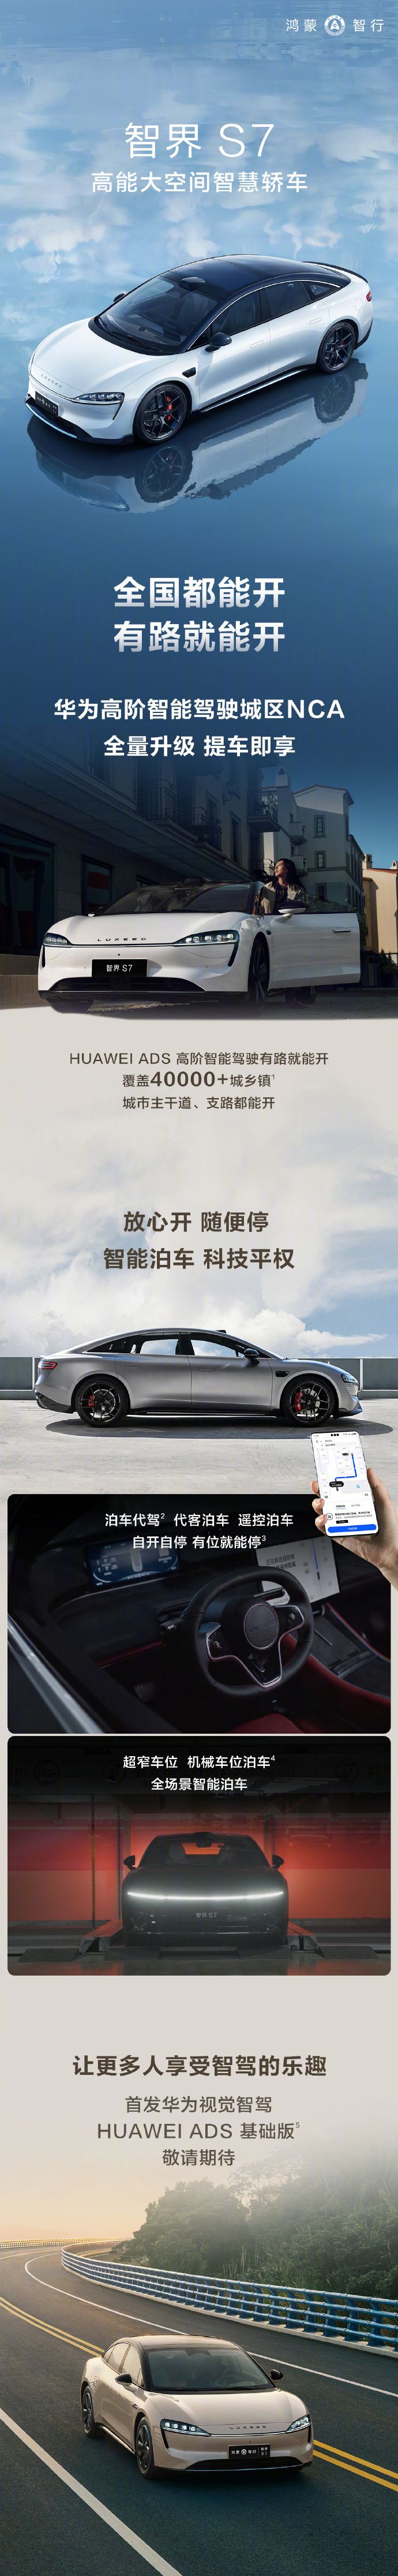 华为余承东发布新版智界S7轿车